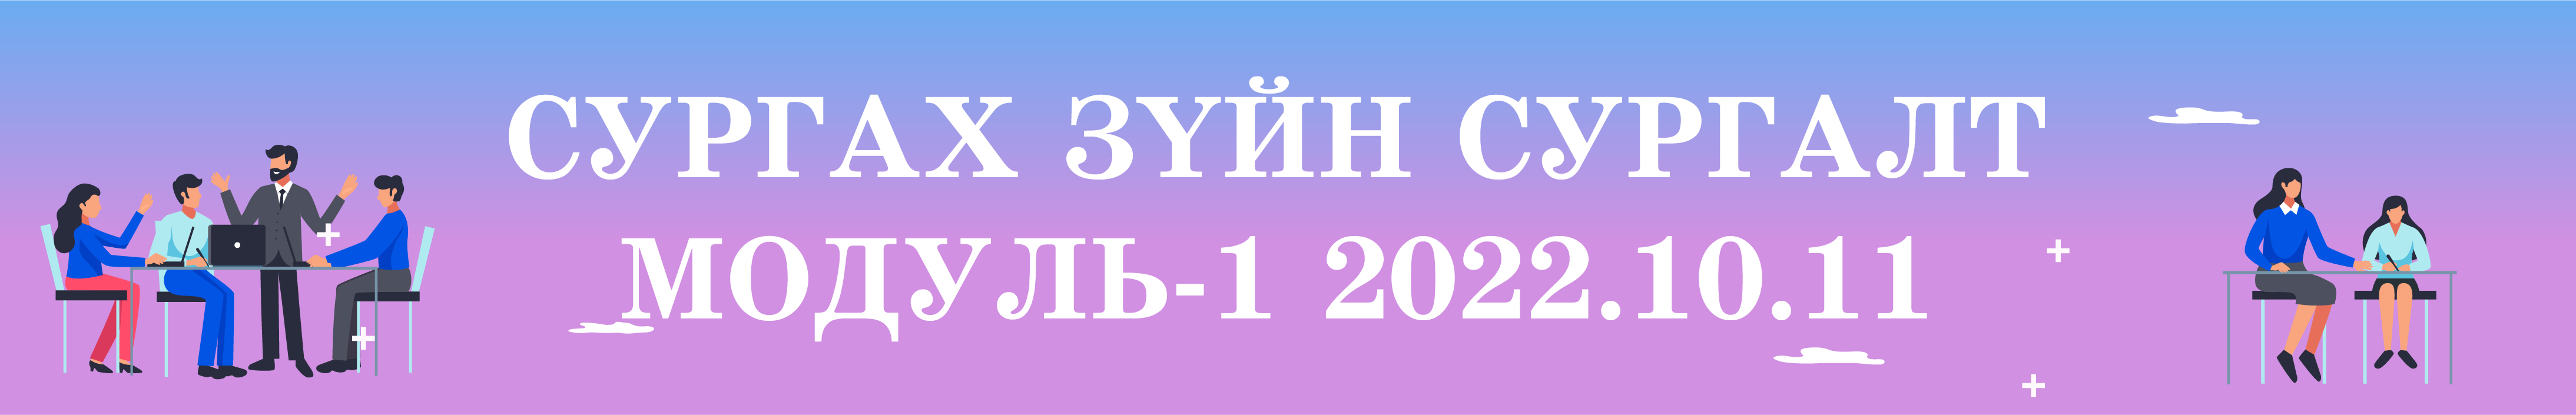 Сургах зүйн сургалт Модуль-1 2022.10.11